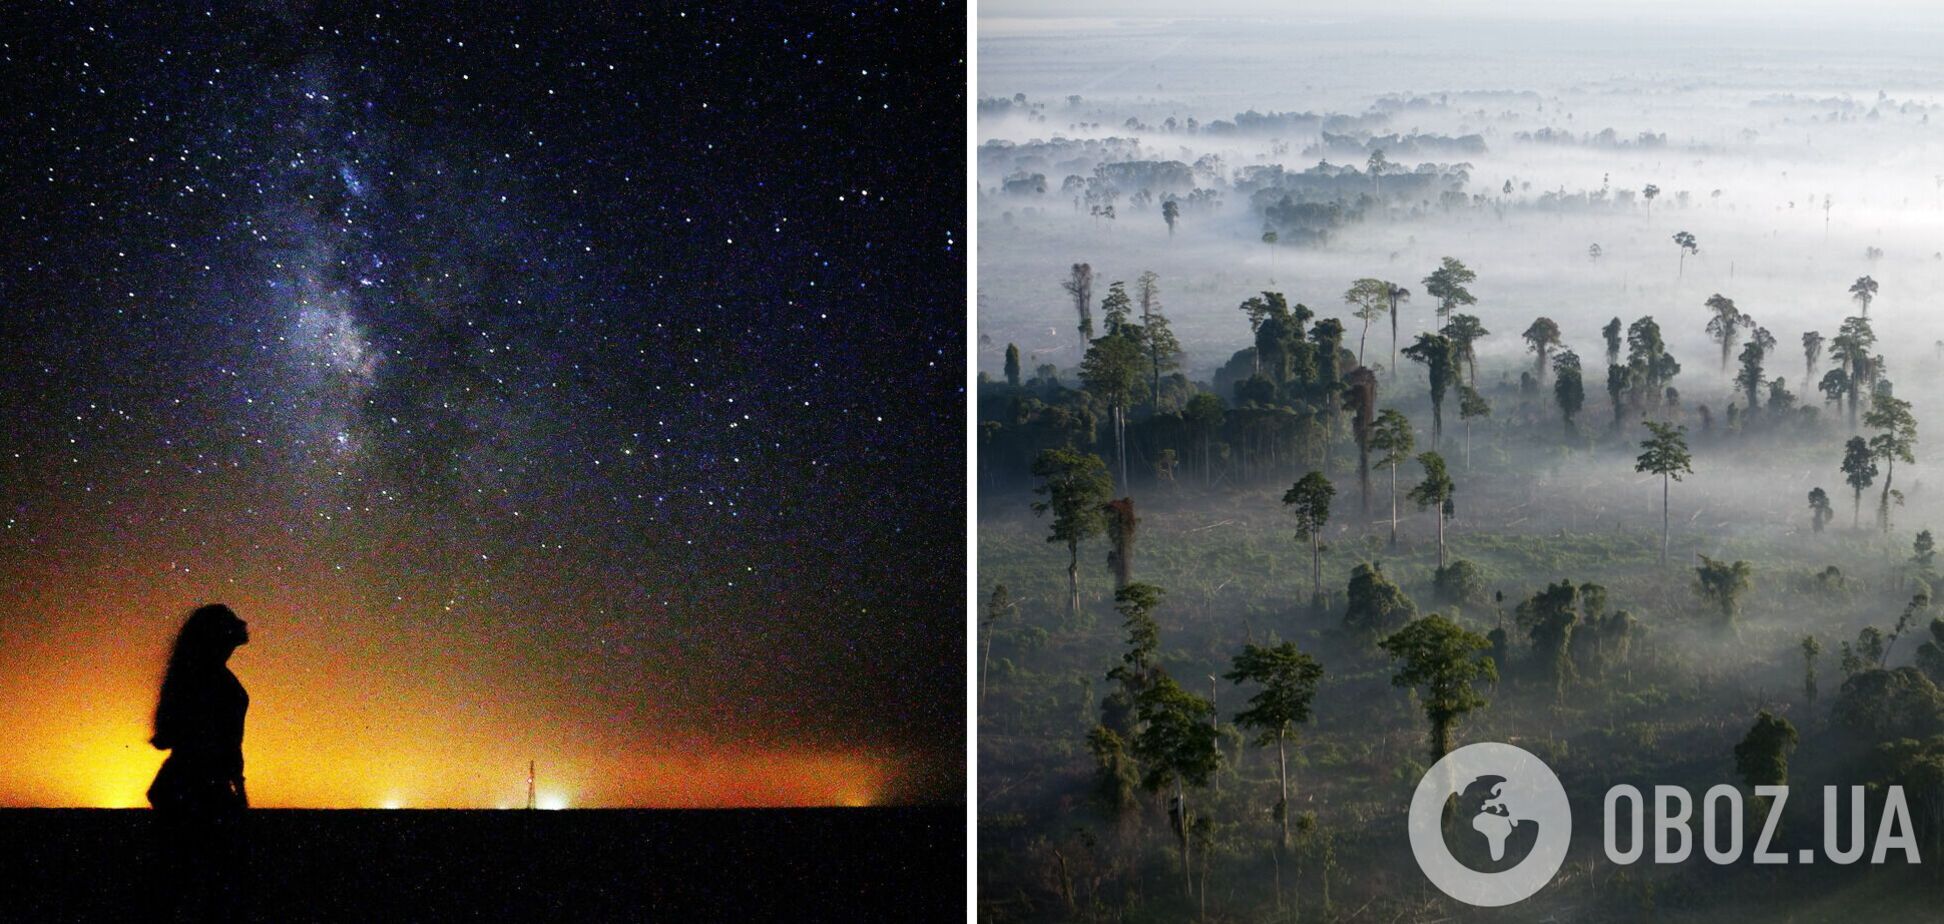 На Земле больше деревьев, чем звезд в Млечном Пути: ученые объяснили, это правда или нет